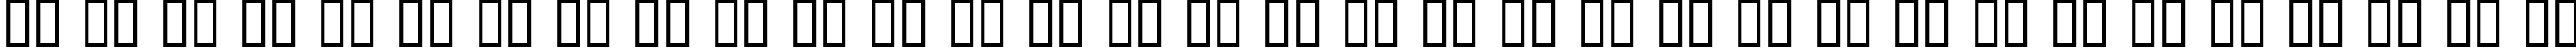 Пример написания русского алфавита шрифтом PanAm LogoText